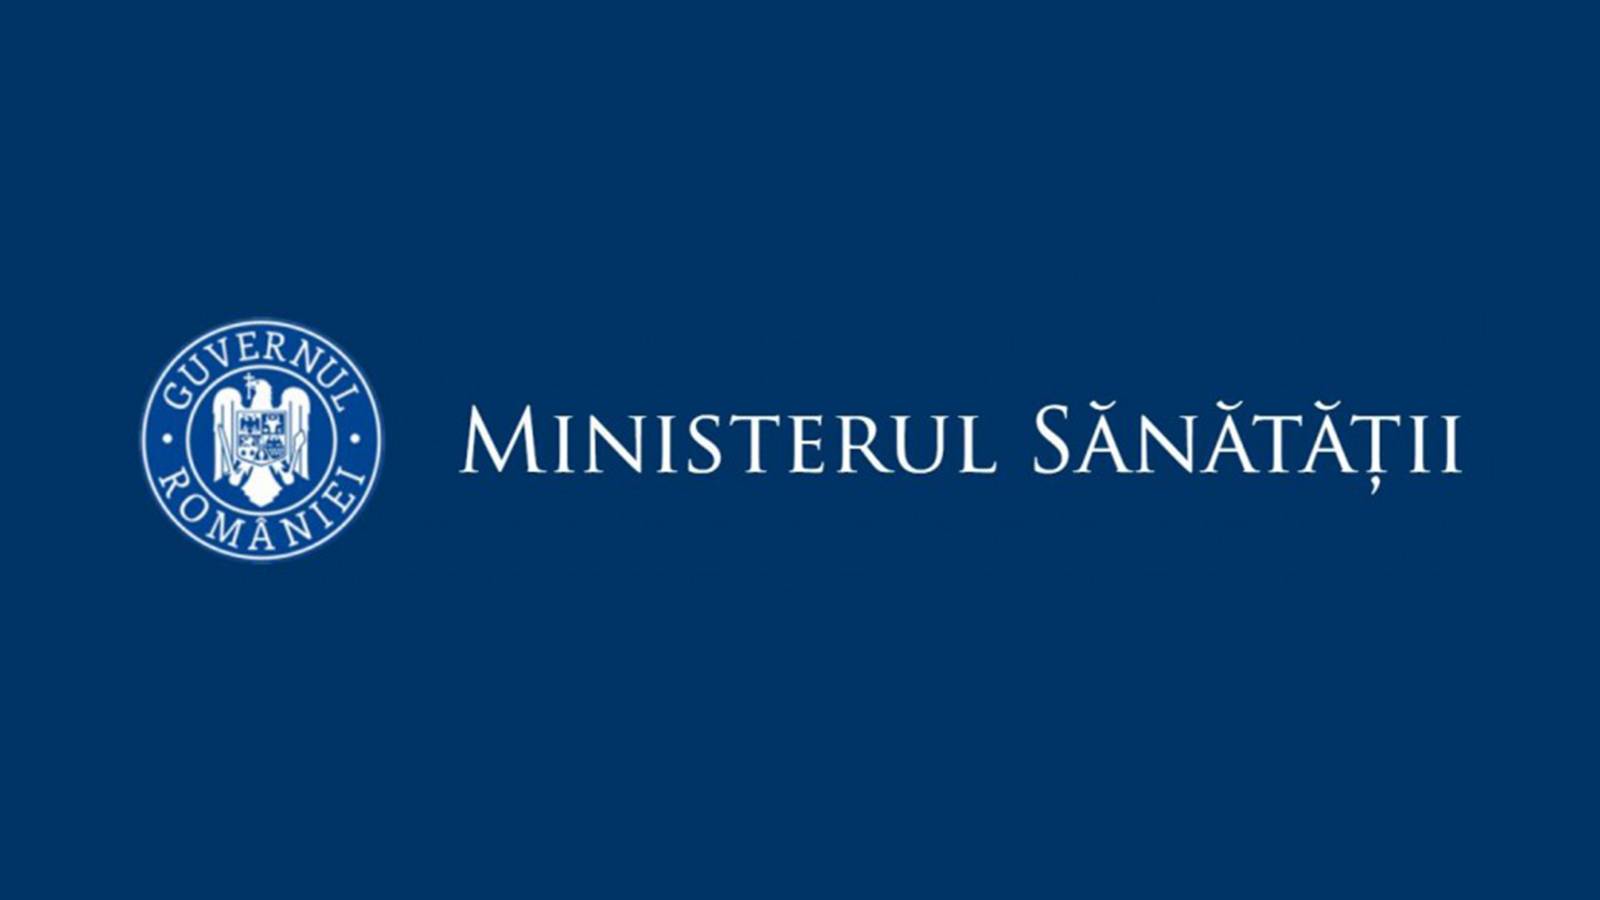 Ministerul Sanatatii urmeaza 2 saptamani grele pentru Romania